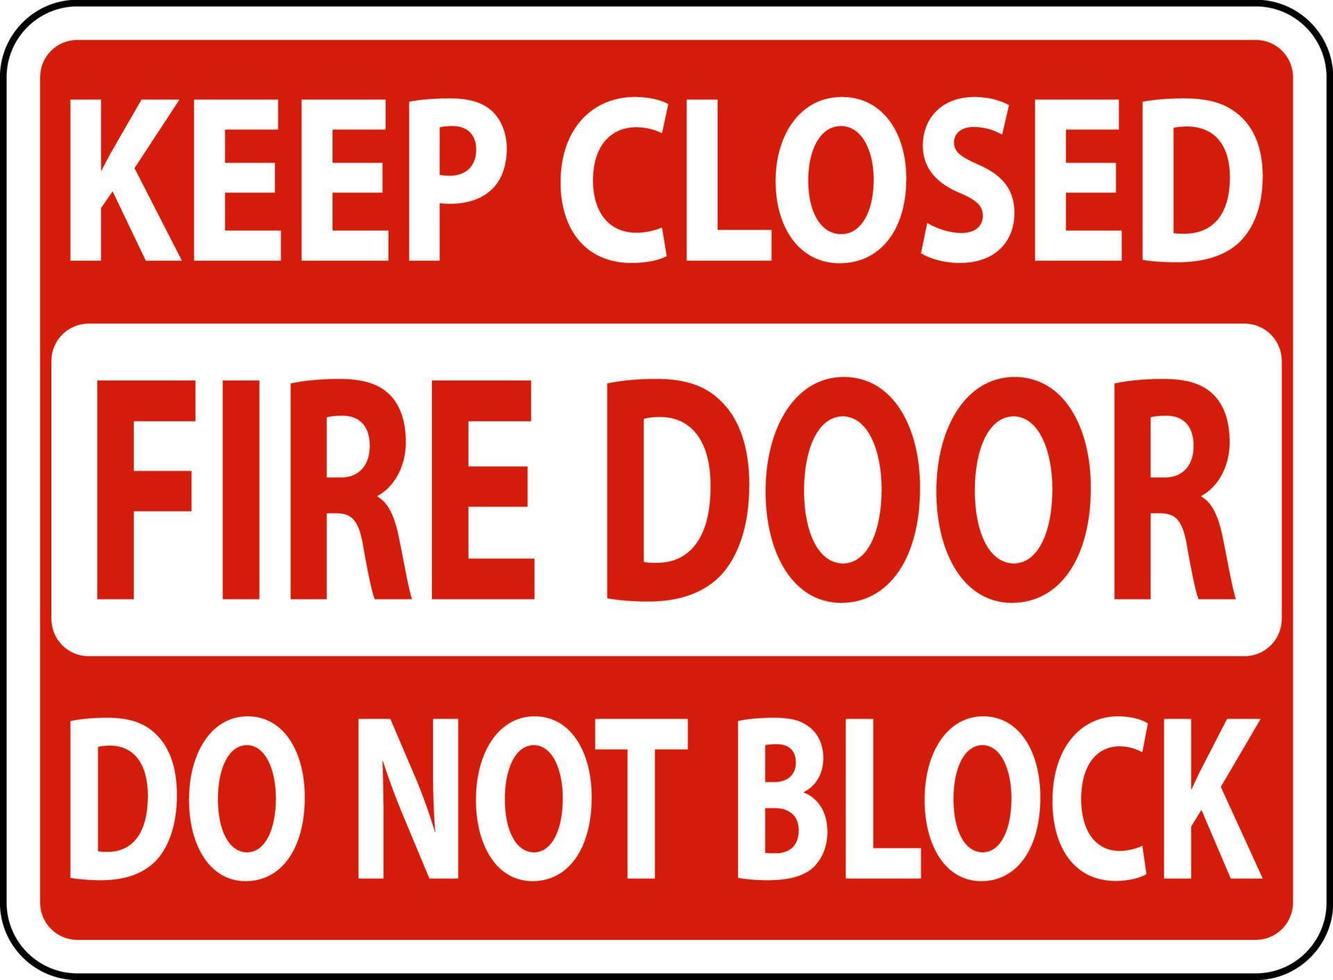 Keep Closed Do Not Block Fire Door Sign vector